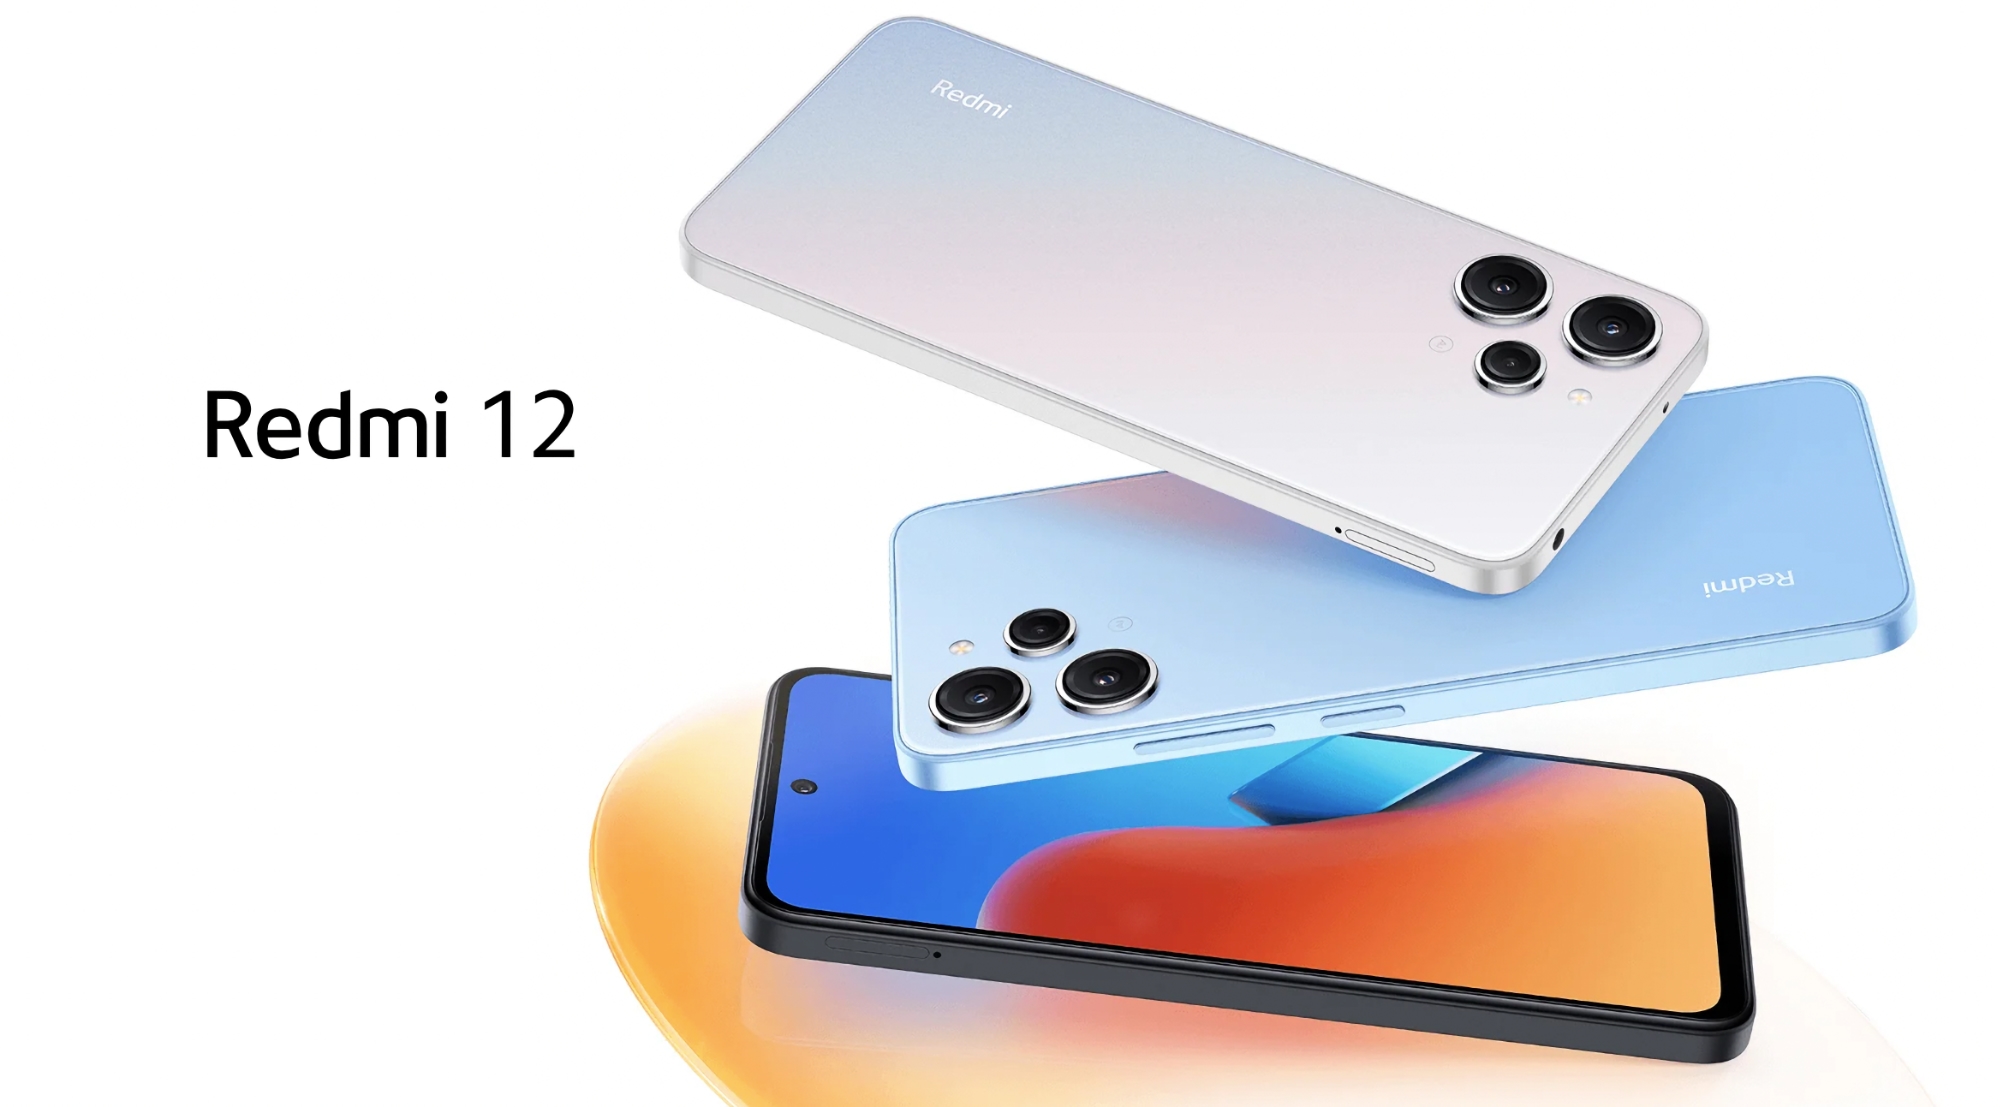 Xiaomi presenta Redmi 12: el nuevo smartphone económico de la compañía con pantalla de 90 Hz, chip Helio G88 y cámara de 50 MP